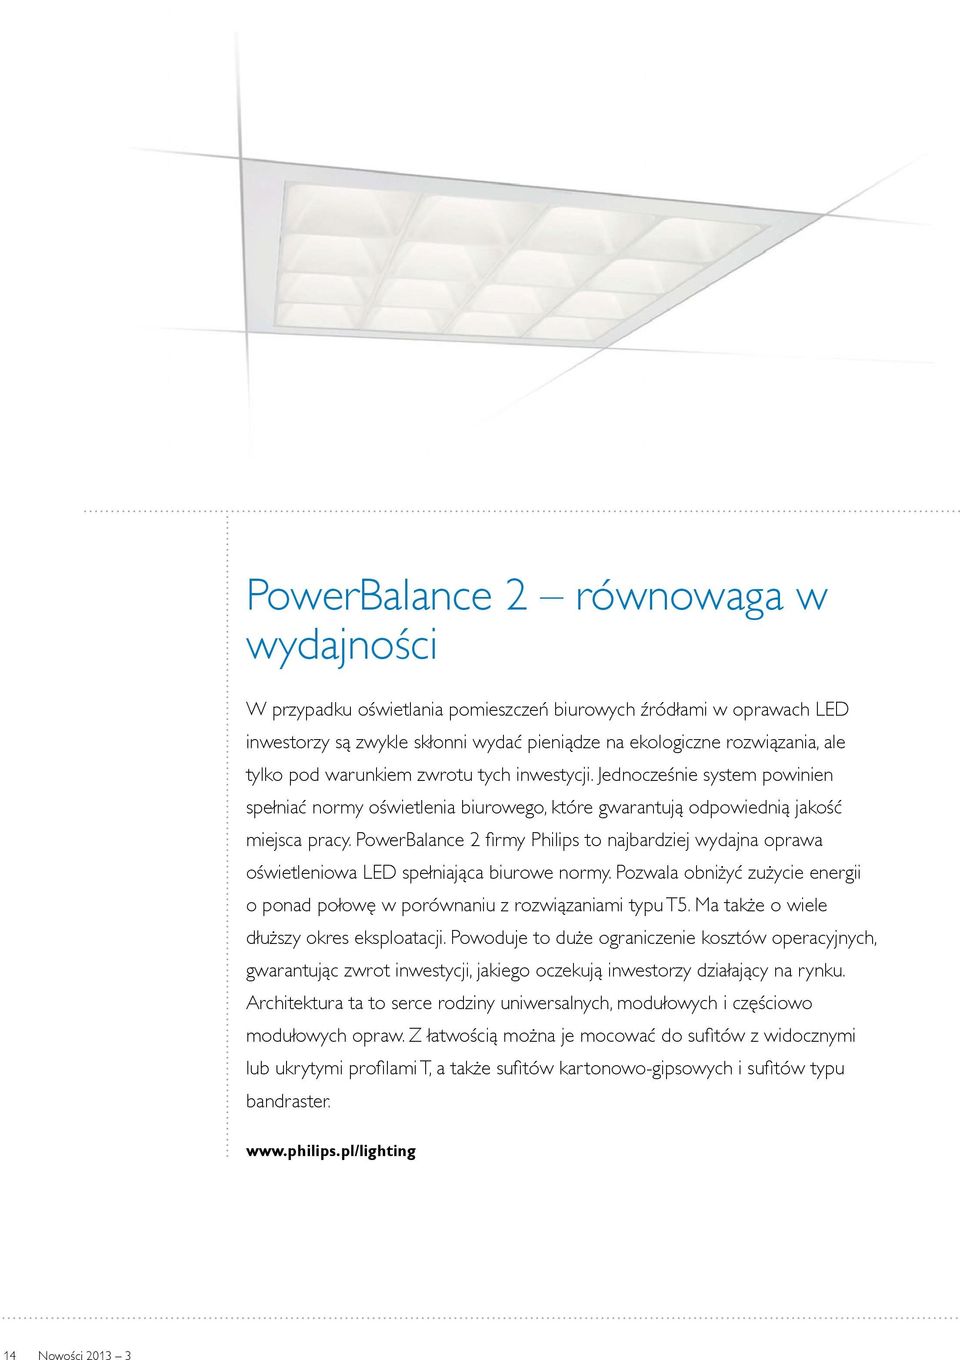 PowerBalance 2 firmy Philips to najbardziej wydajna oprawa oświetleniowa LED spełniająca biurowe normy. Pozwala obniżyć zużycie energii o ponad połowę w porównaniu z rozwiązaniami typu T5.